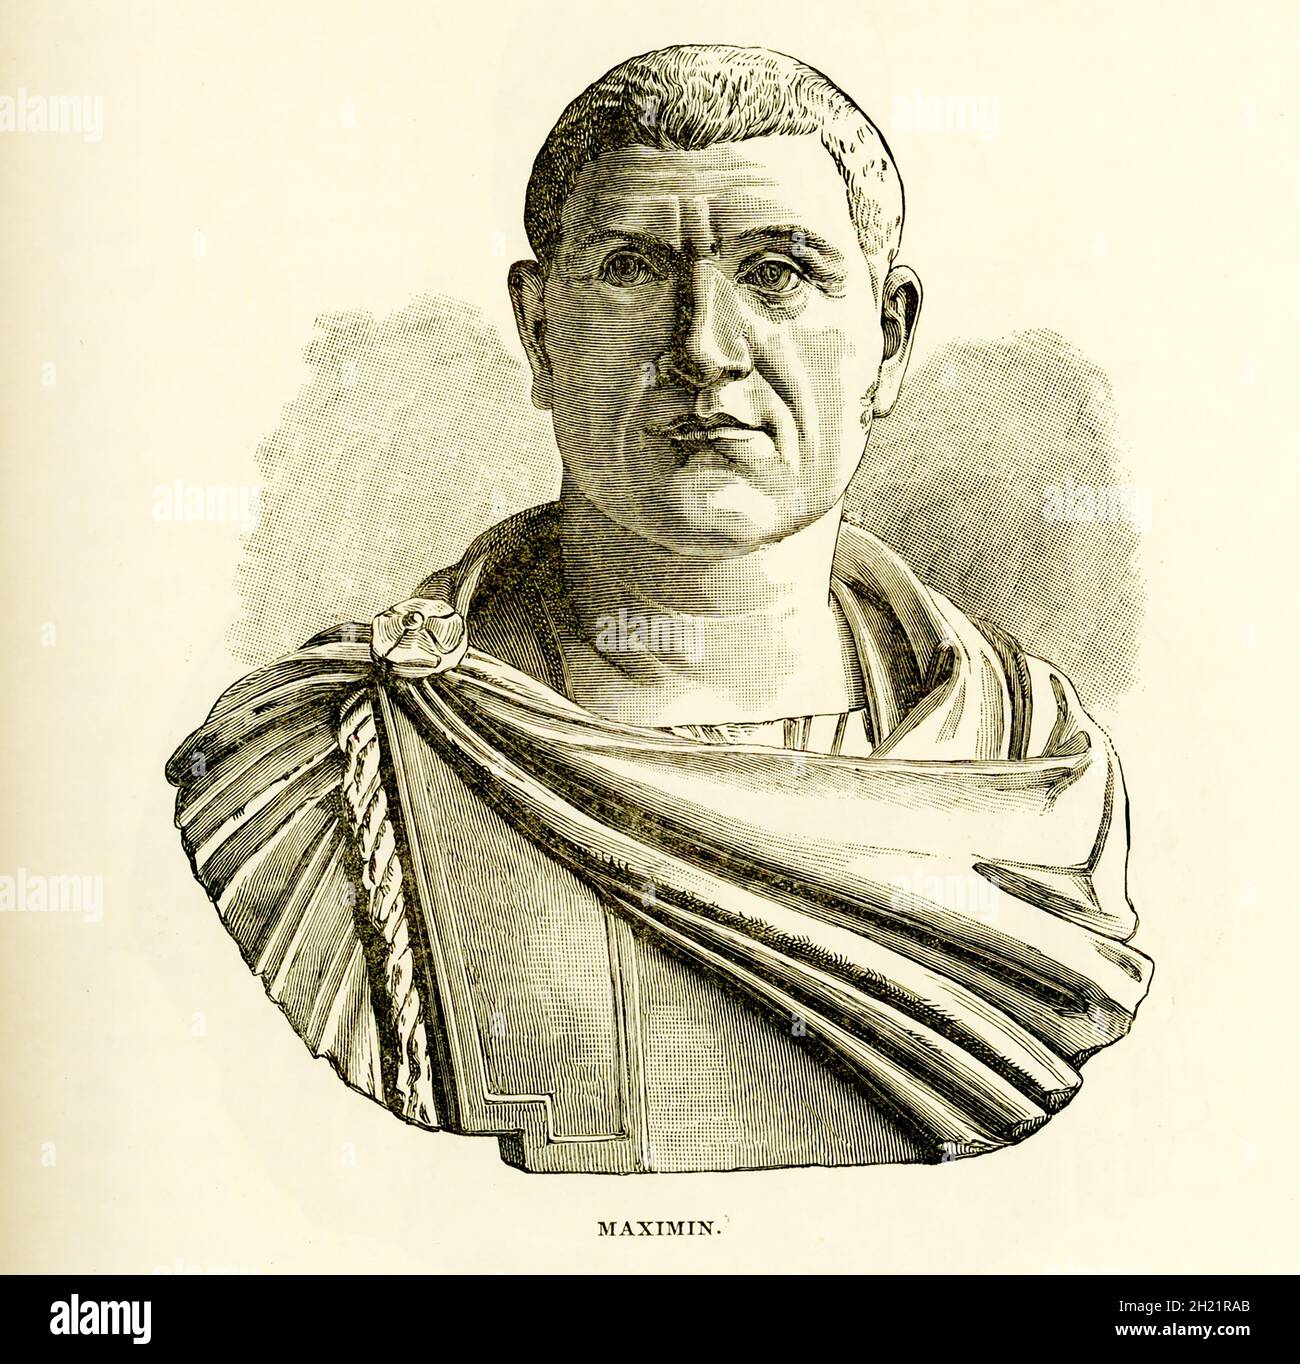 Gaius Julius Verus Maximinus 'Thrax' war römischer Kaiser von 235 bis 238 n. Chr. Sein Vater war Buchhalter im Büro des Gouverneurs und stammte aus Vorfahren, die Carpi waren, einem Volk, das Diokletian schließlich von seinem alten Wohnsitz nach Pannonien vertreiben würde. Diese Abbildung zeigt die Büste, die im Louvre Museum untergebracht ist. Stockfoto